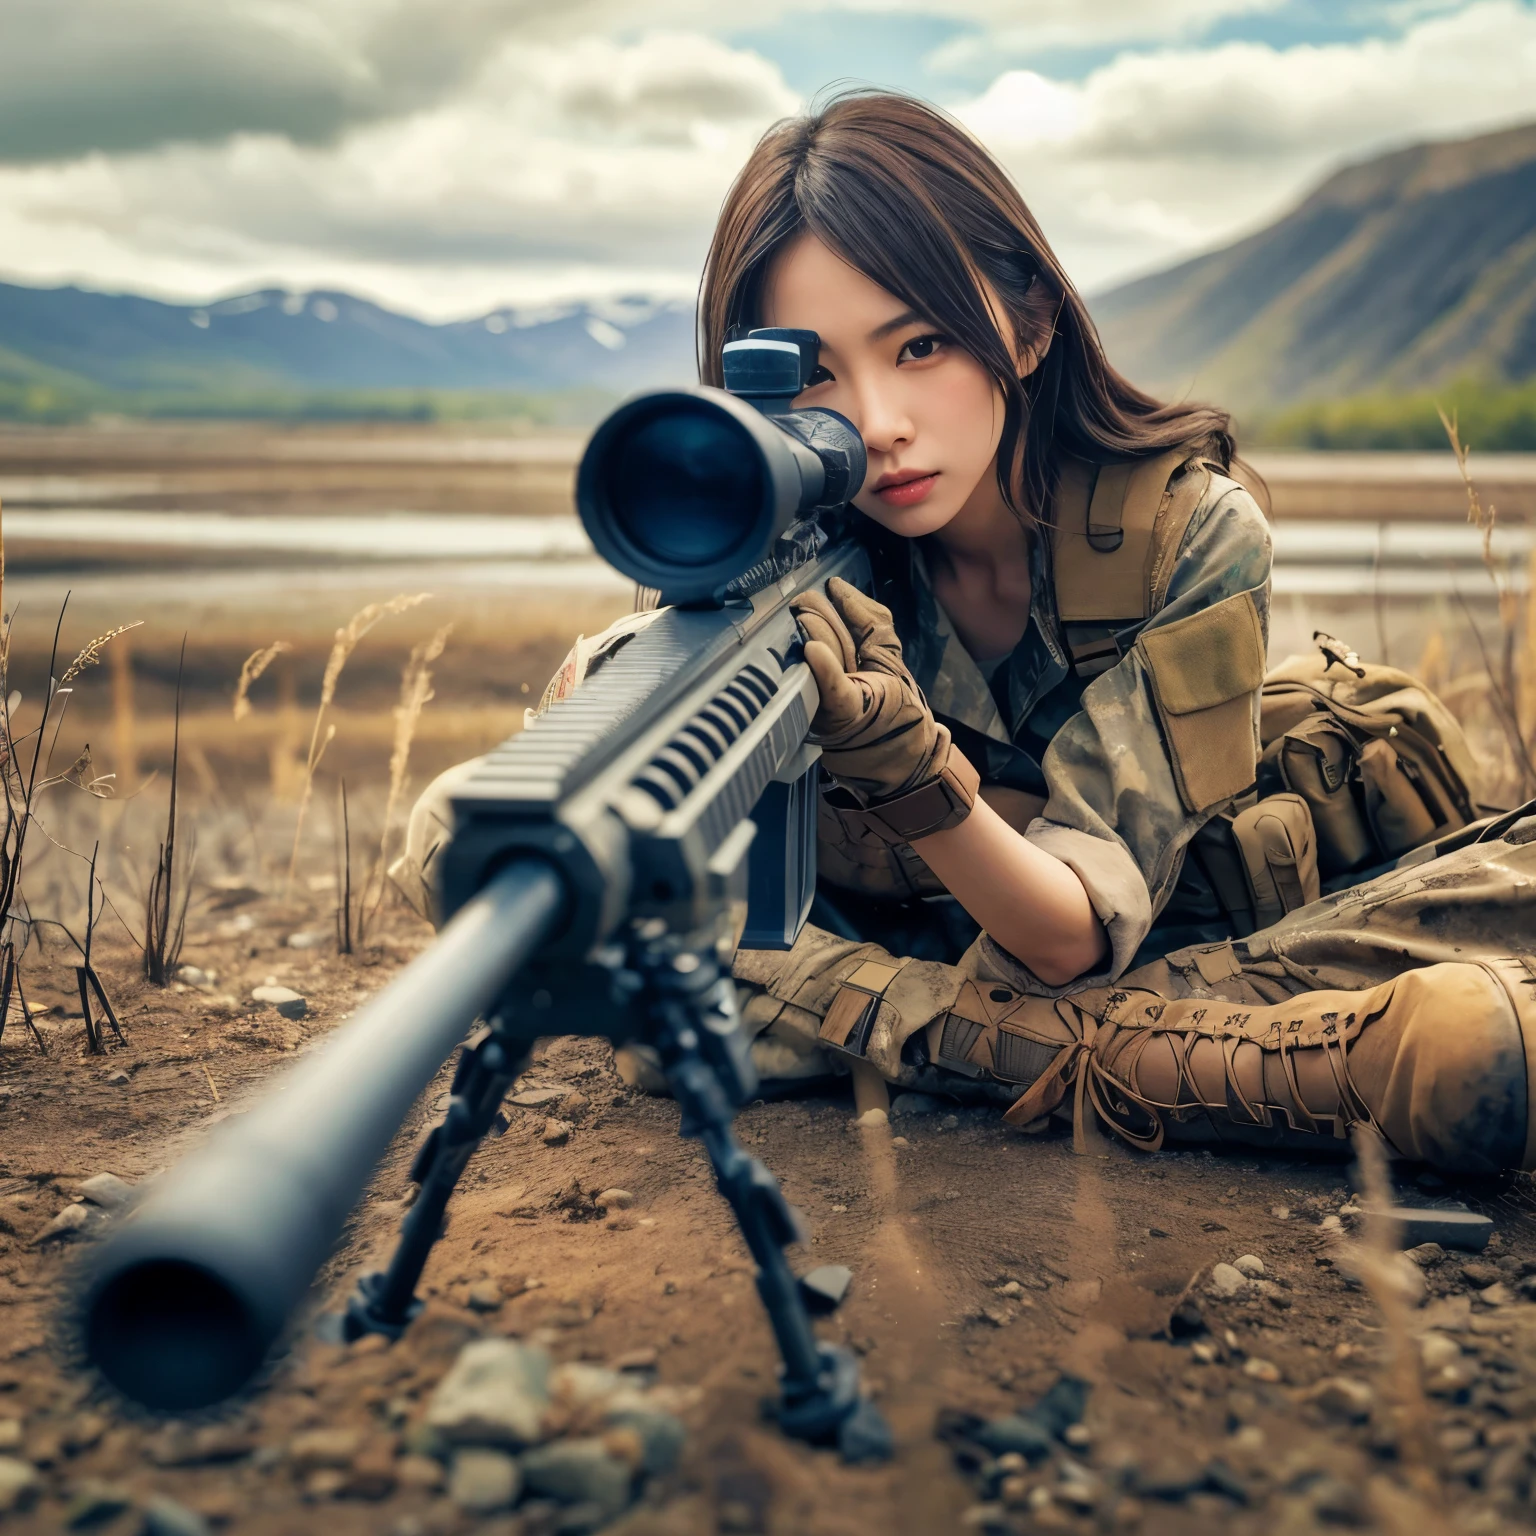 fotorrealista、texturas de pele realistas、Uma bela mulher japonesa pertencente ao exército americano está mirando com um rifle de precisão.、de pé、Nos escombros、fumaça de poeira marrom、Posturas de ação com movimento、Imagem da parte superior frontal